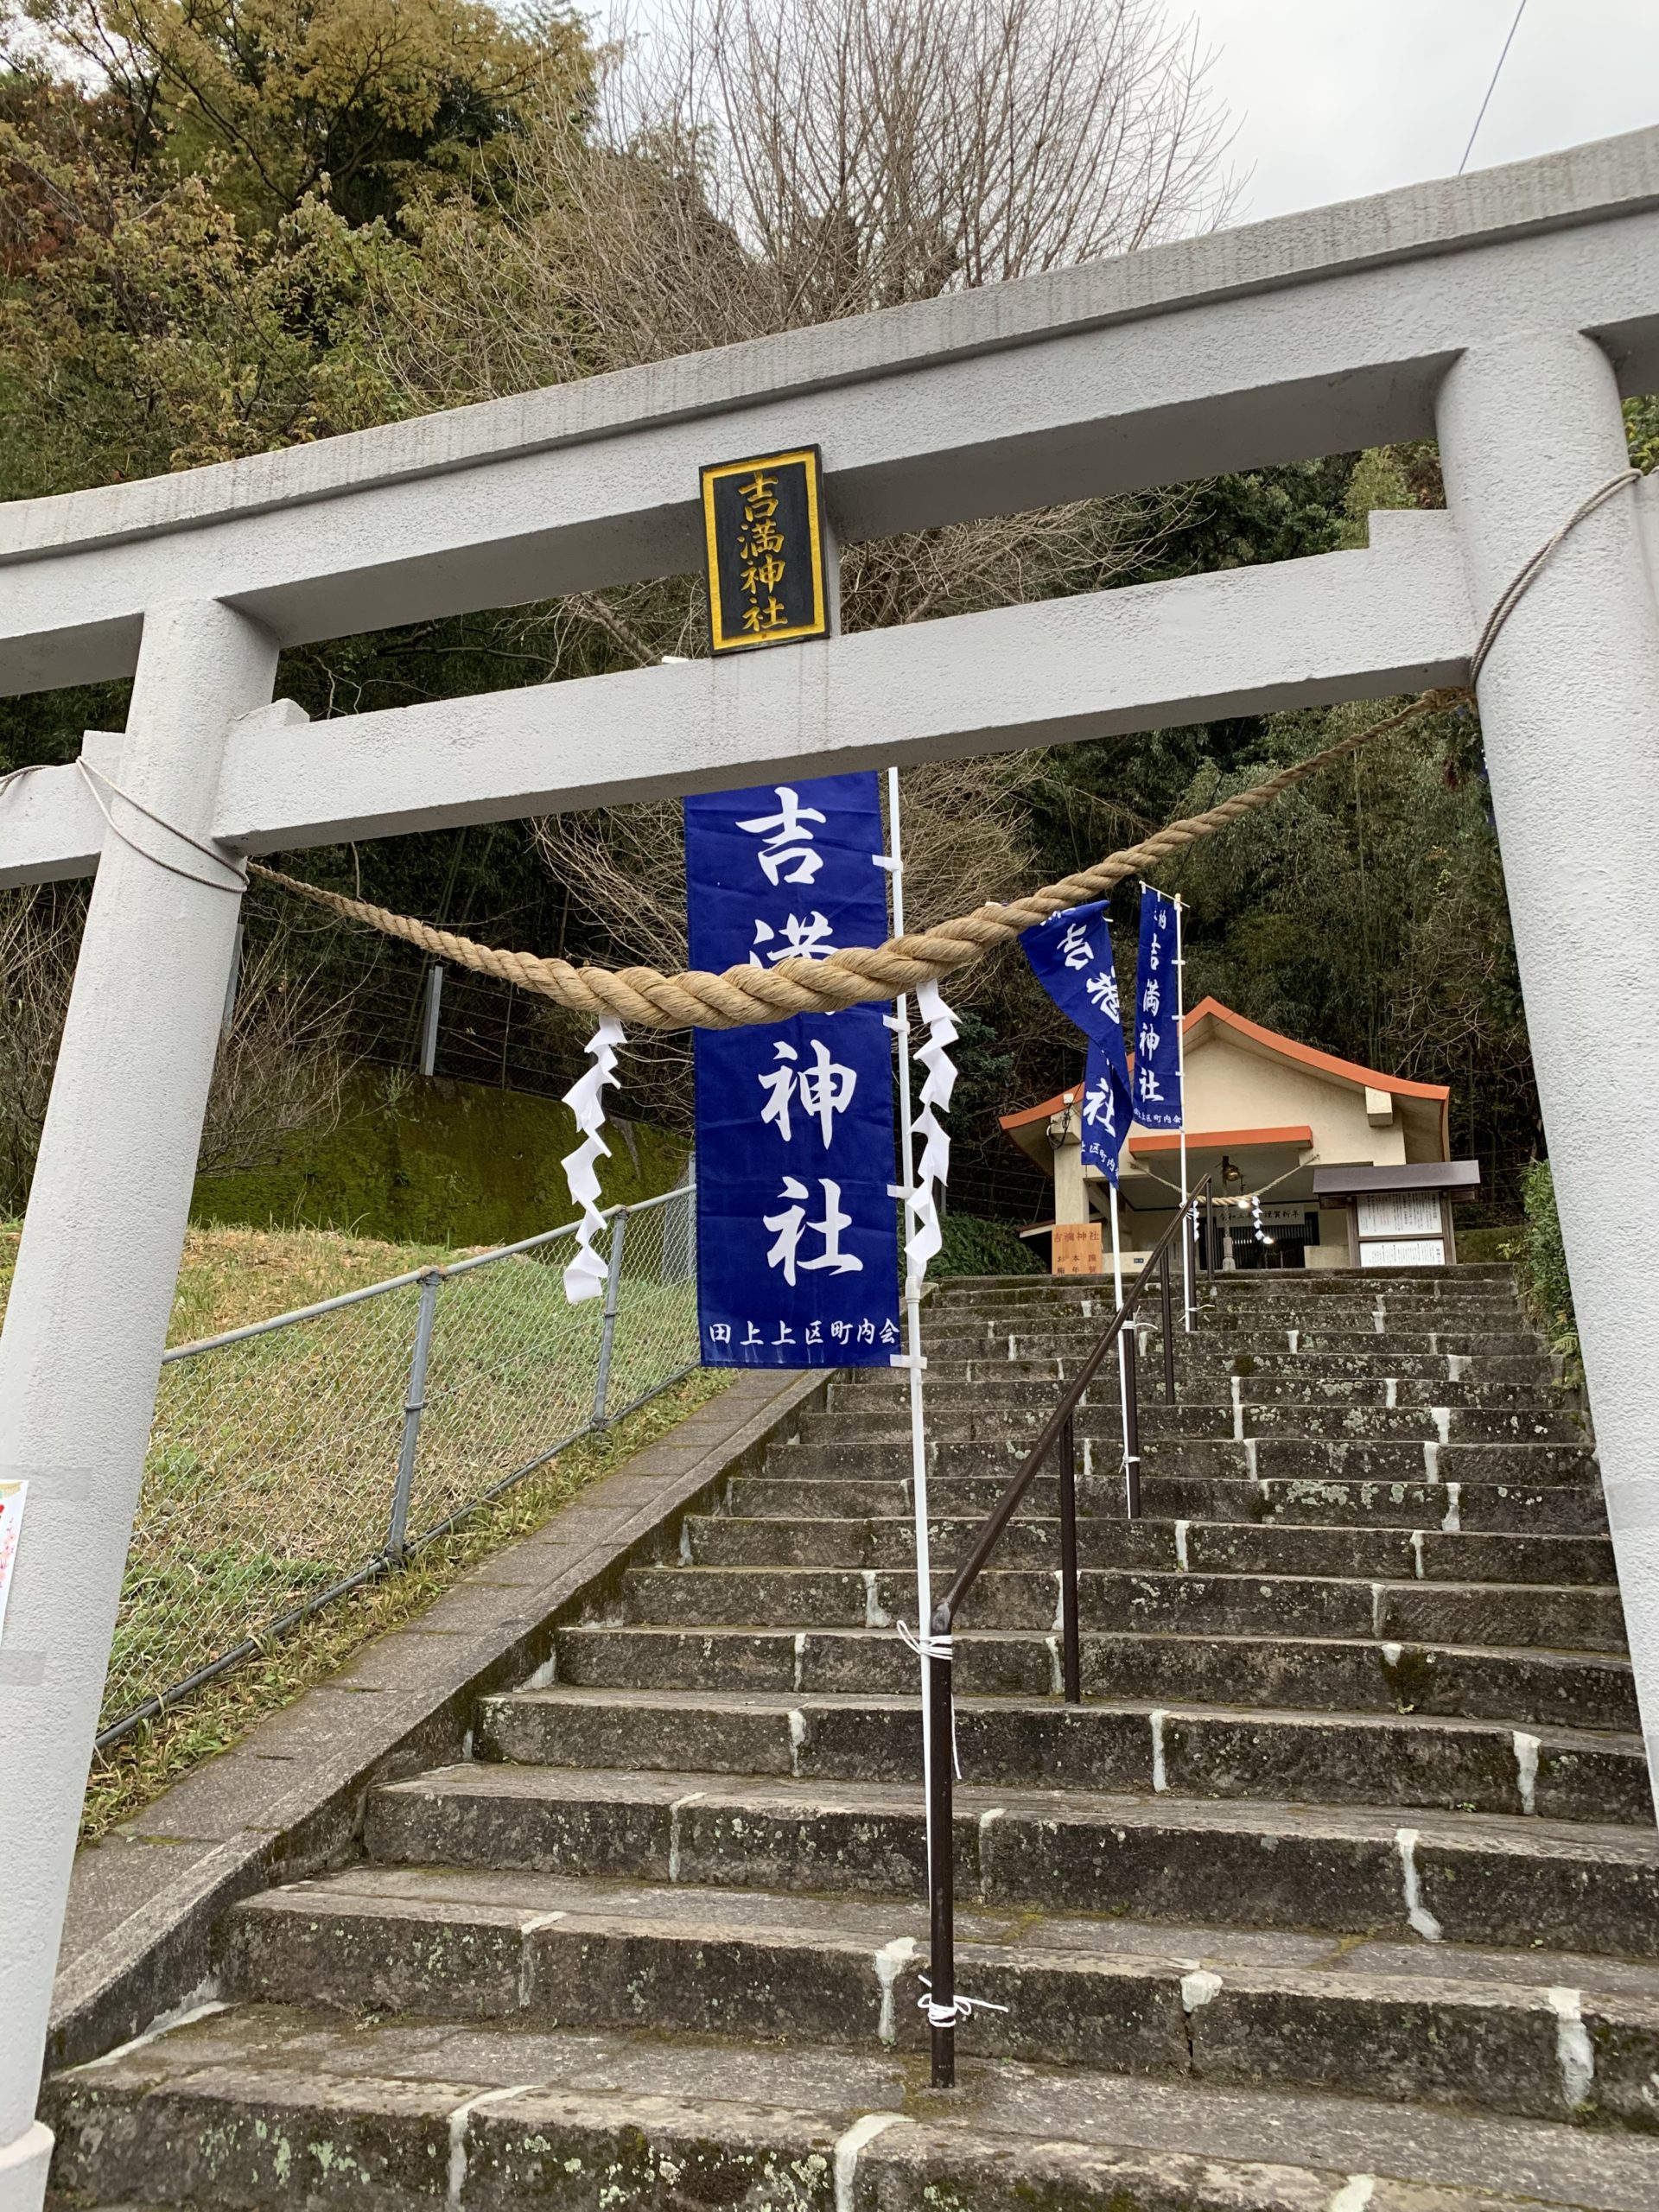 初詣は恒例の吉満神社へ❗️